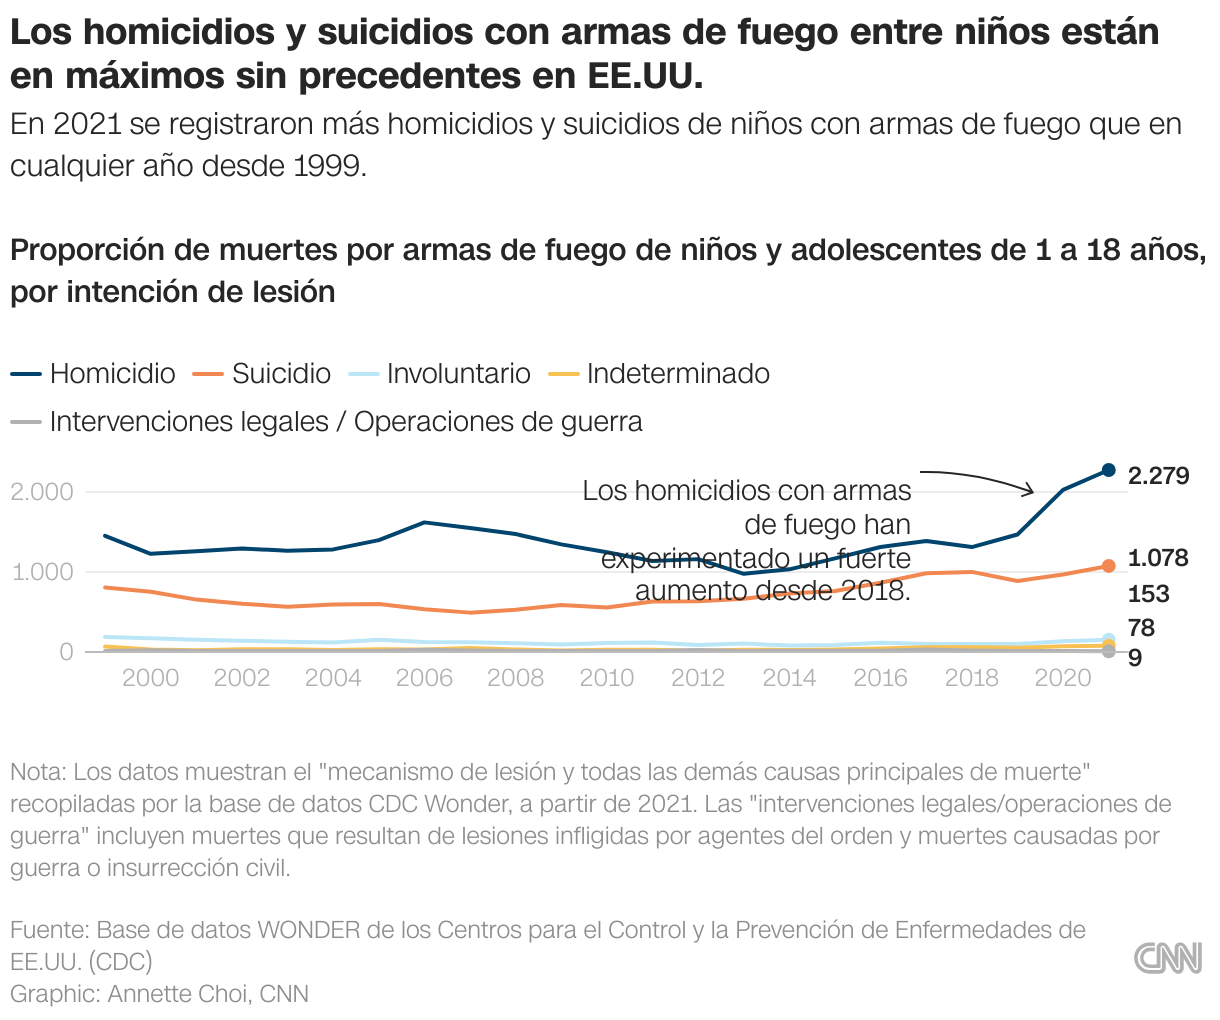 Gráfico de líneas que muestra las muertes de niños y adolescentes por intención de lesión desde 1999 hasta 2021.